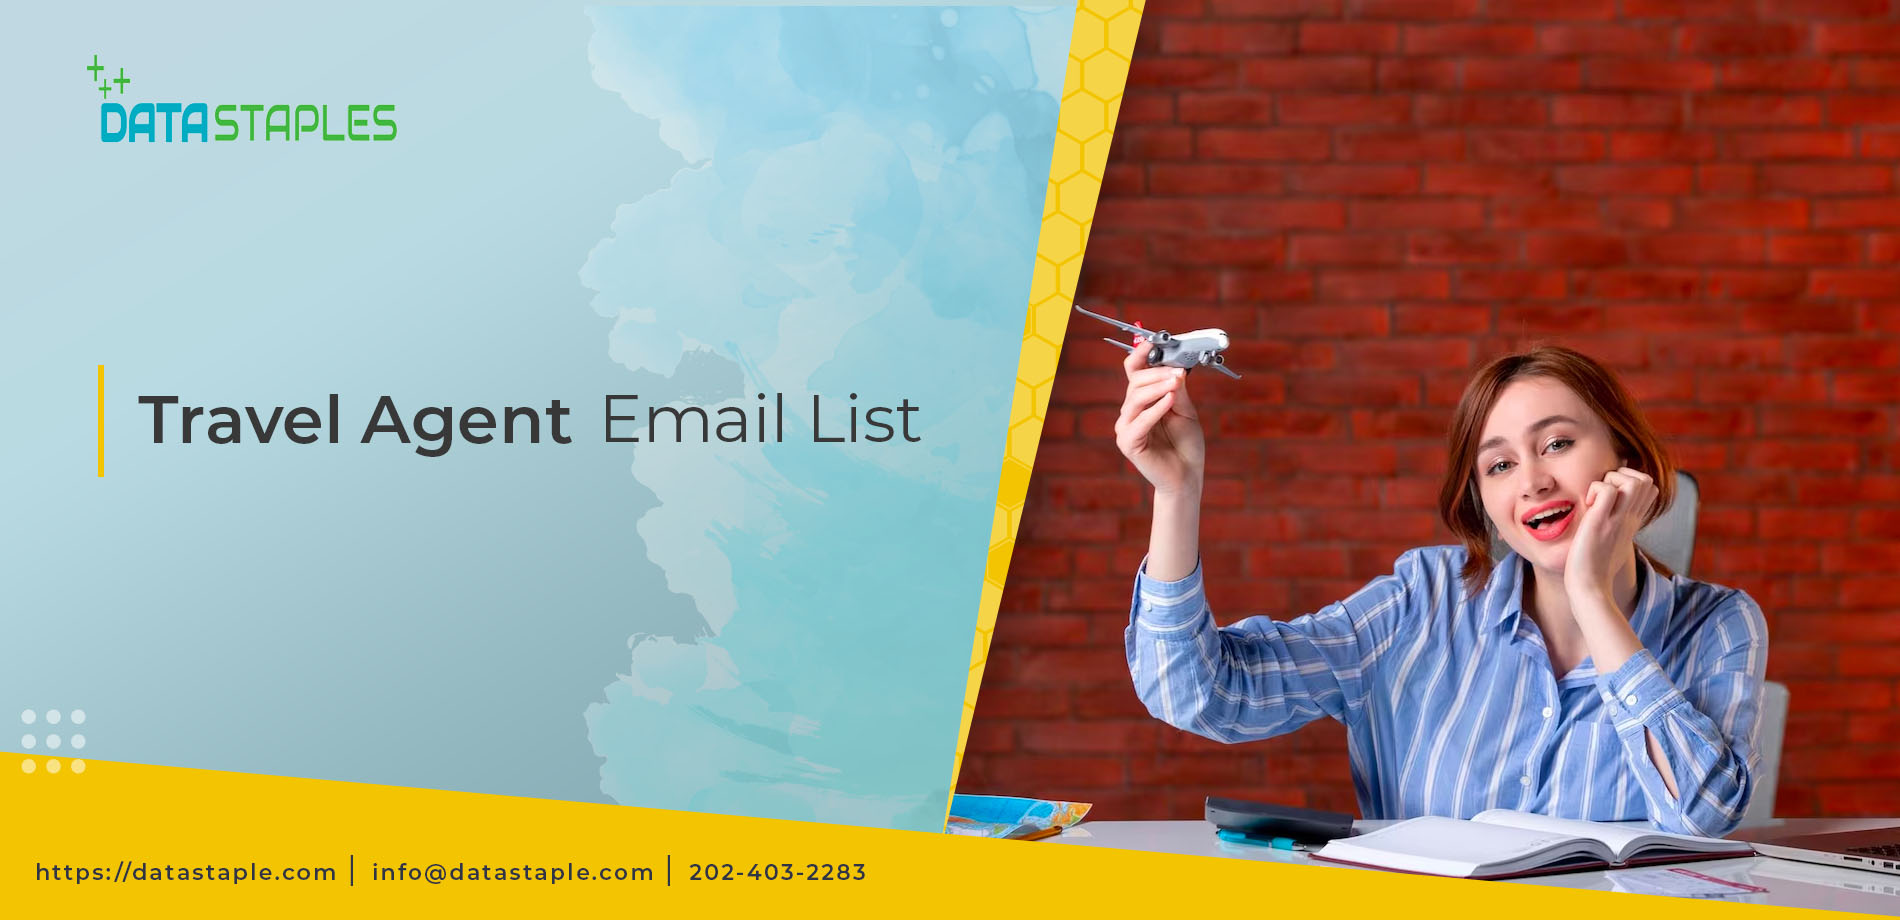 Travel Agent Email List | DataStaples